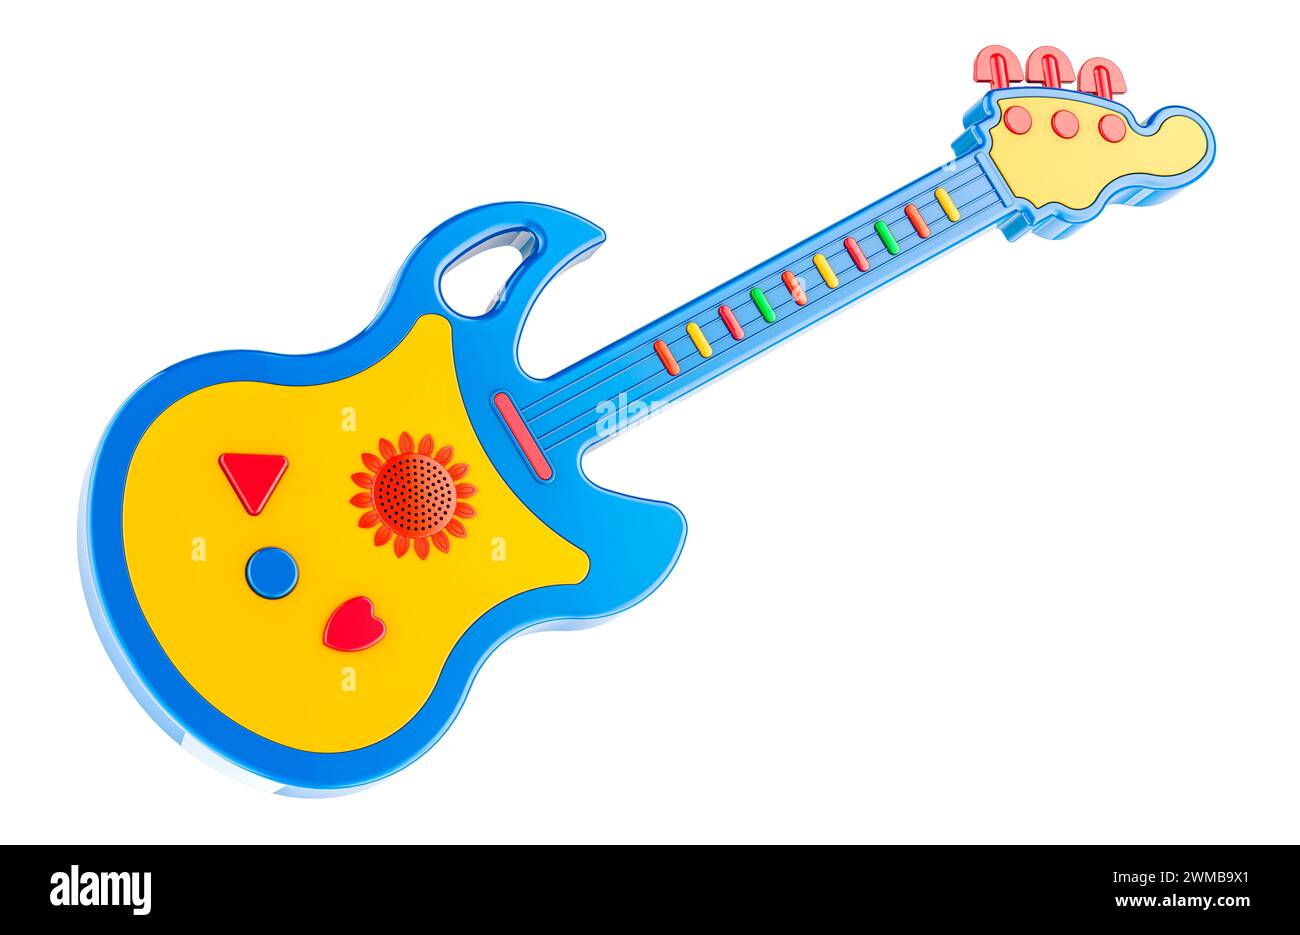 Spielzeuggitarre Für Kleinkinder, Kinder, Kinder. 3D-Rendering isoliert auf weißem Hintergrund Stockfoto